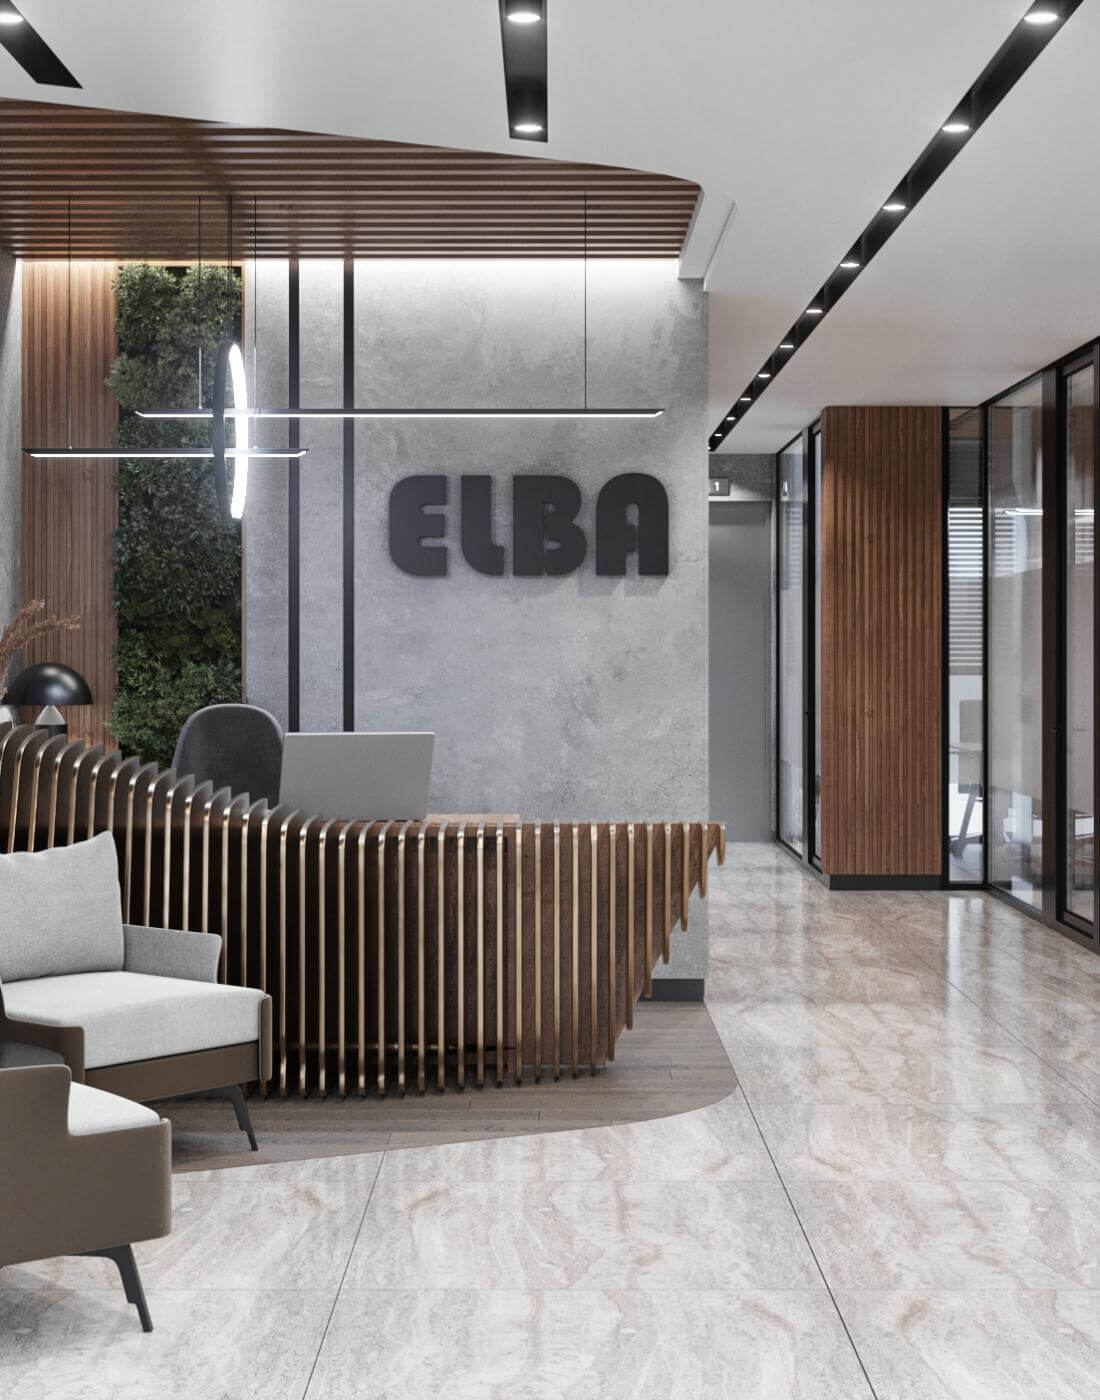 En iyi iç mimarlık büroları  Elba - Berg Ofis Genel